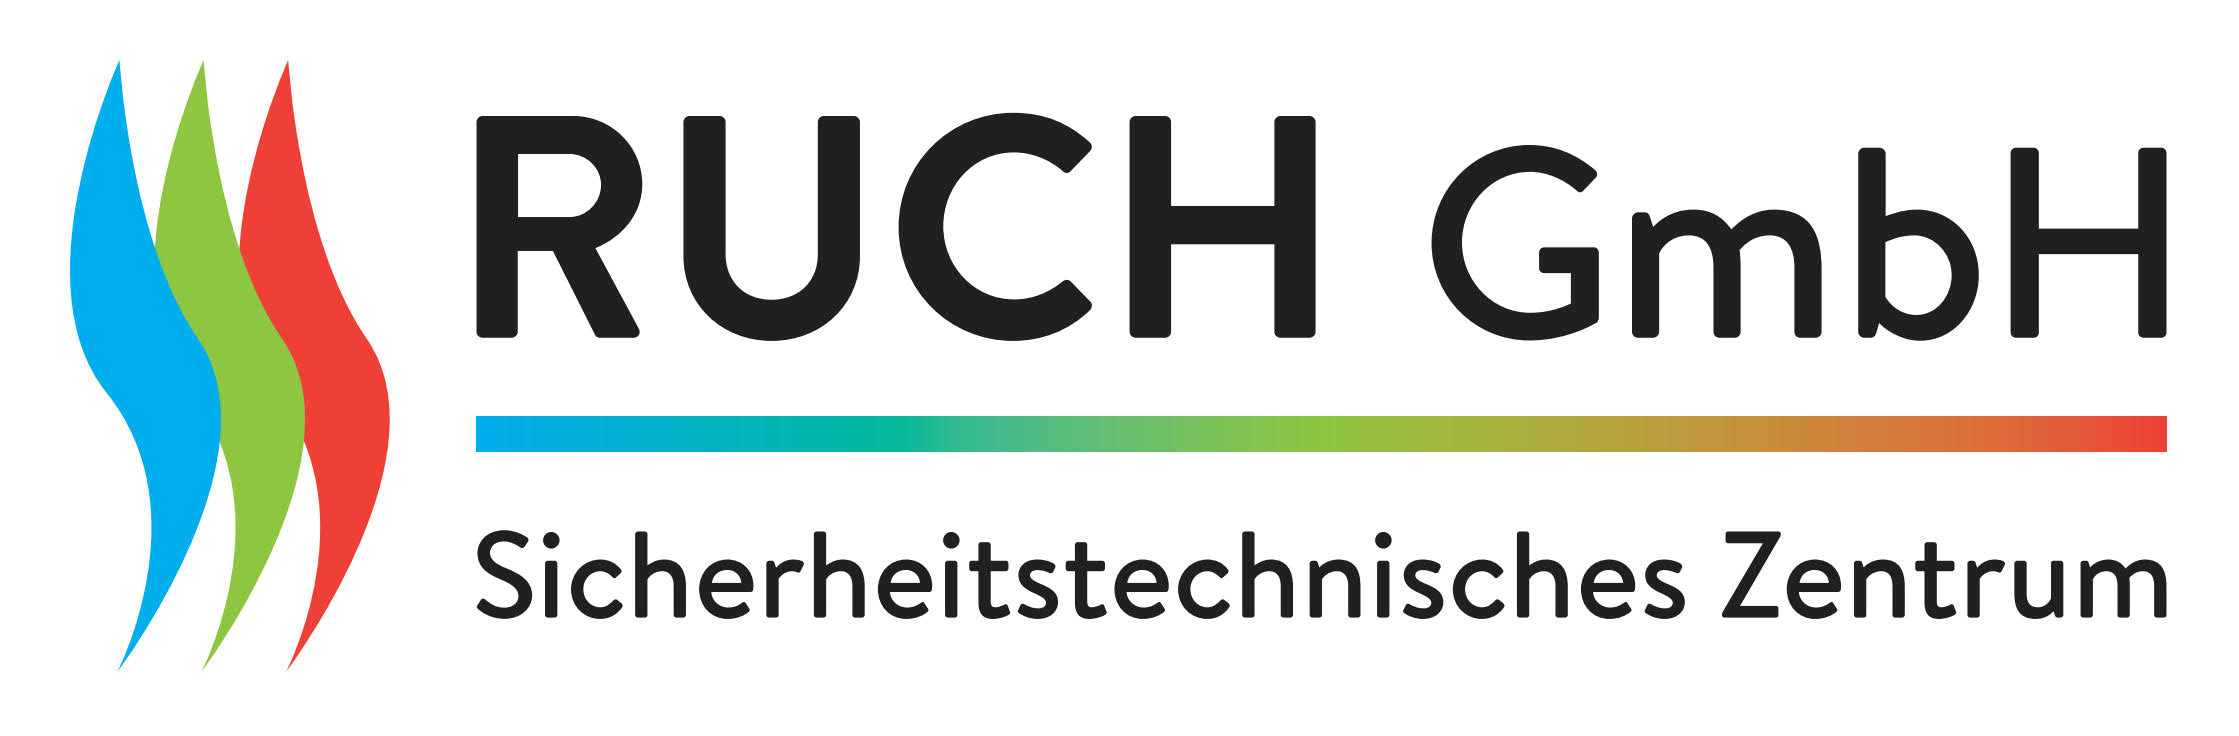 RUCH GmbH